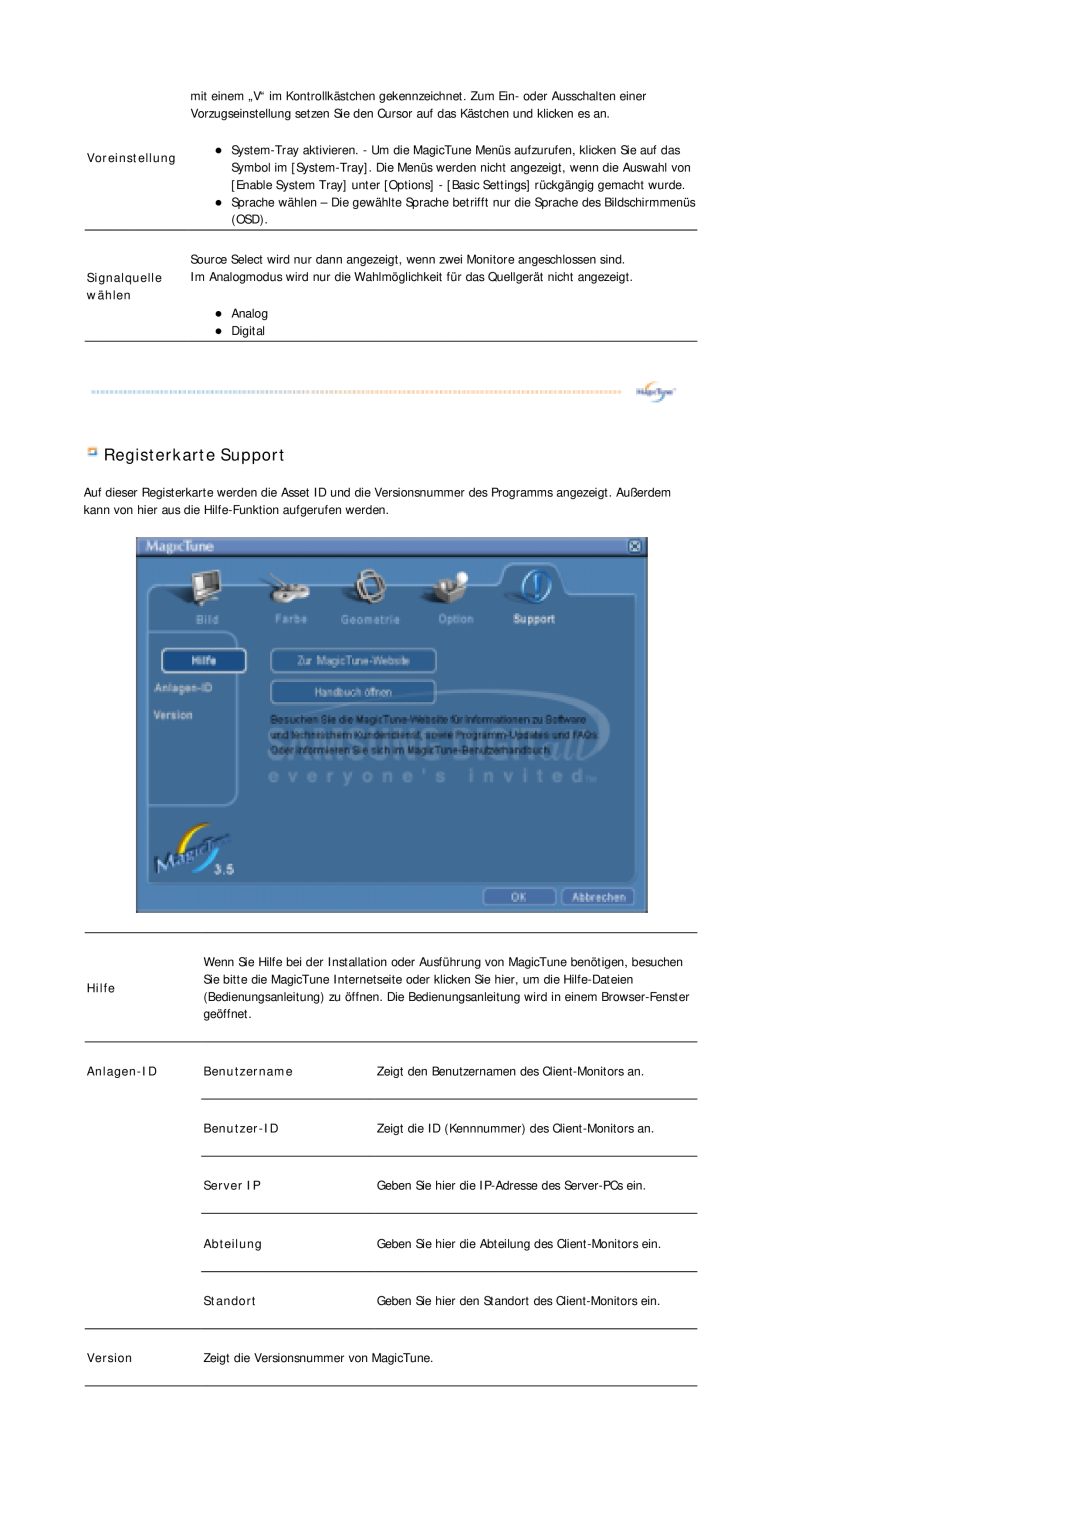 Samsung LS17MJSTSV/EDC Registerkarte Support, Voreinstellung, Hilfe, Anlagen-ID, Benutzername, Benutzer-ID, Server IP 